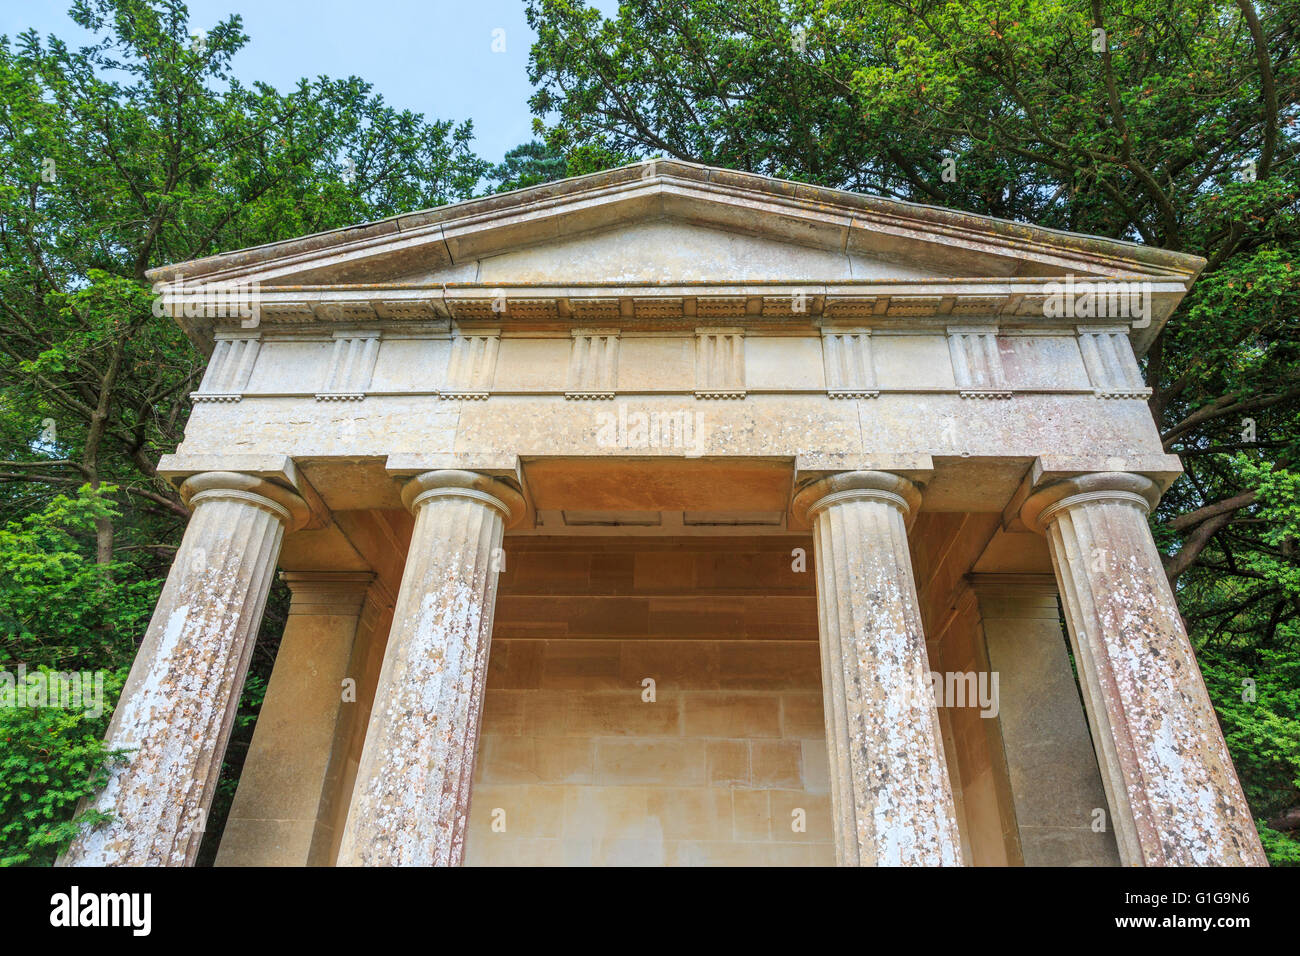 Le toit et les colonnes de temple dorique, une folie dans les motifs de Bowood House conçu par Capability Brown, Calne, Wiltshire, Royaume-Uni Banque D'Images